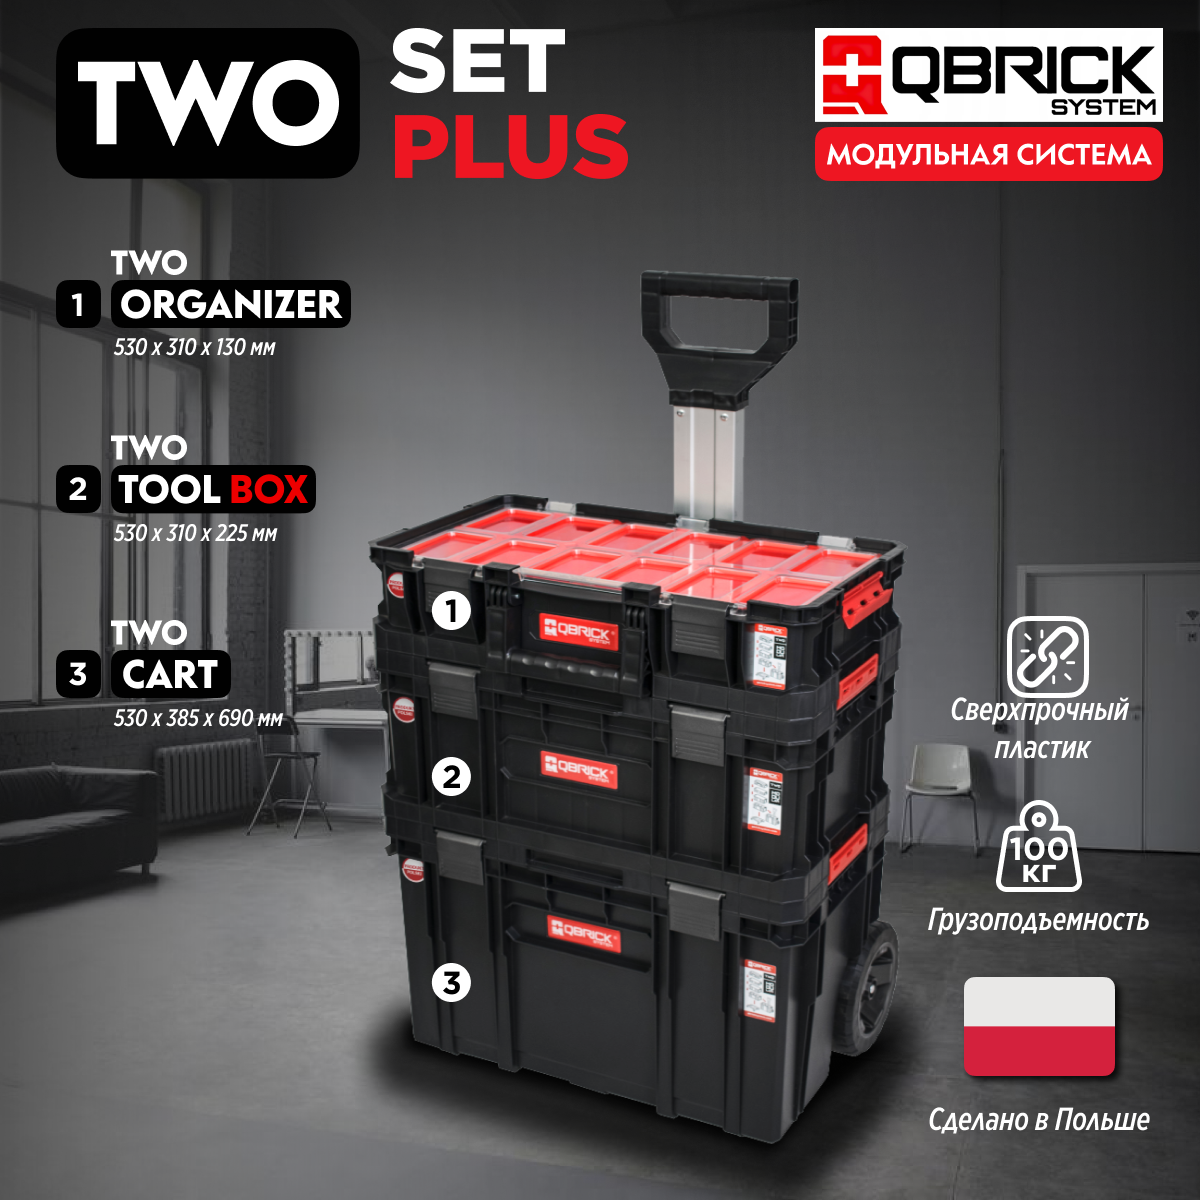 Набор ящиков для инструментов Qbrick System TWO Set Plus 1-Z251248PG001